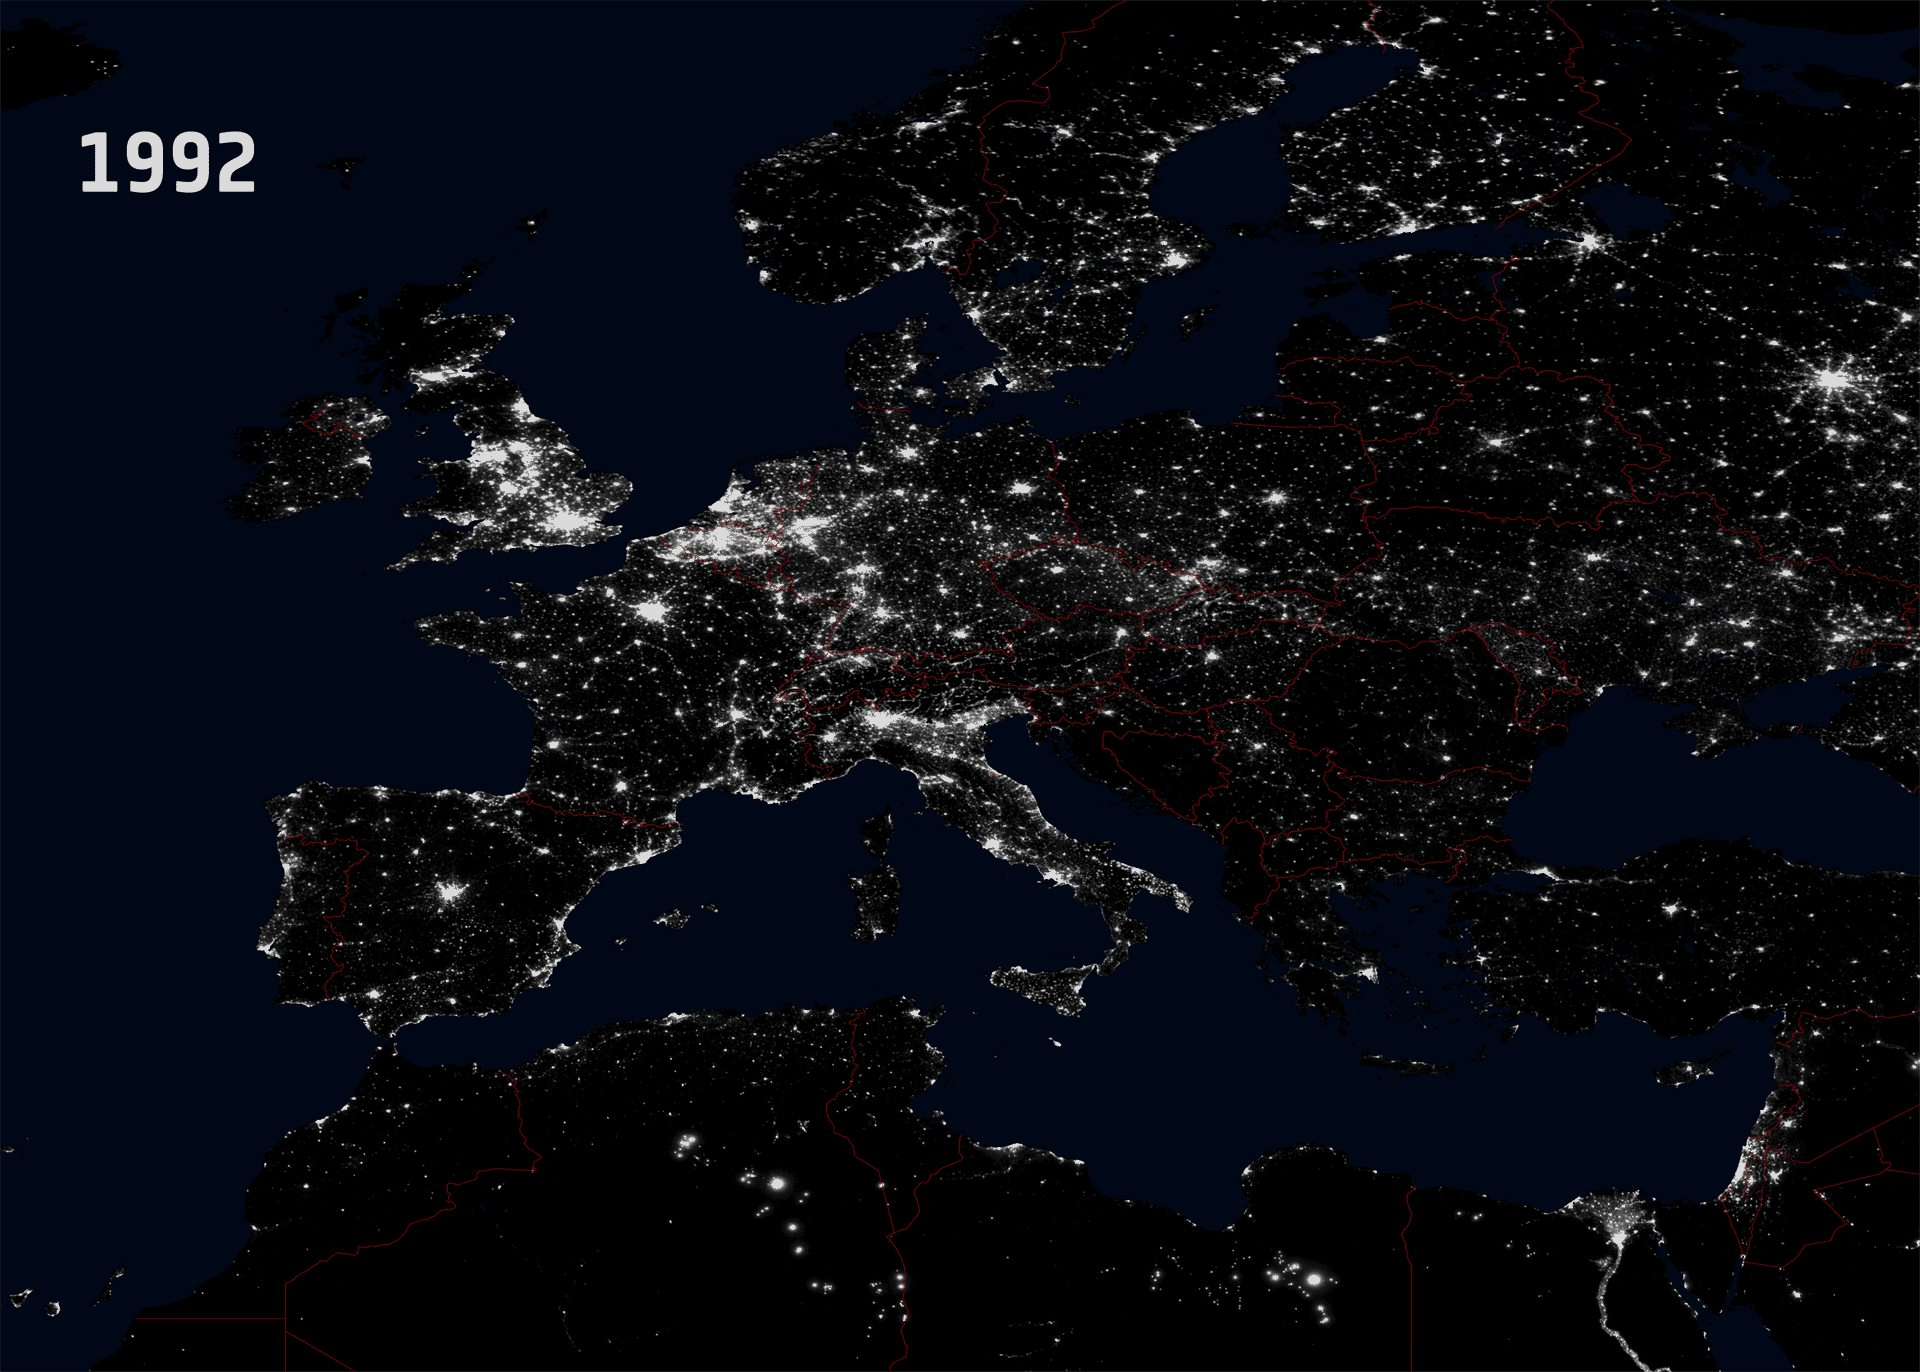 Nachtlichter in Europa, 1992 und 2010